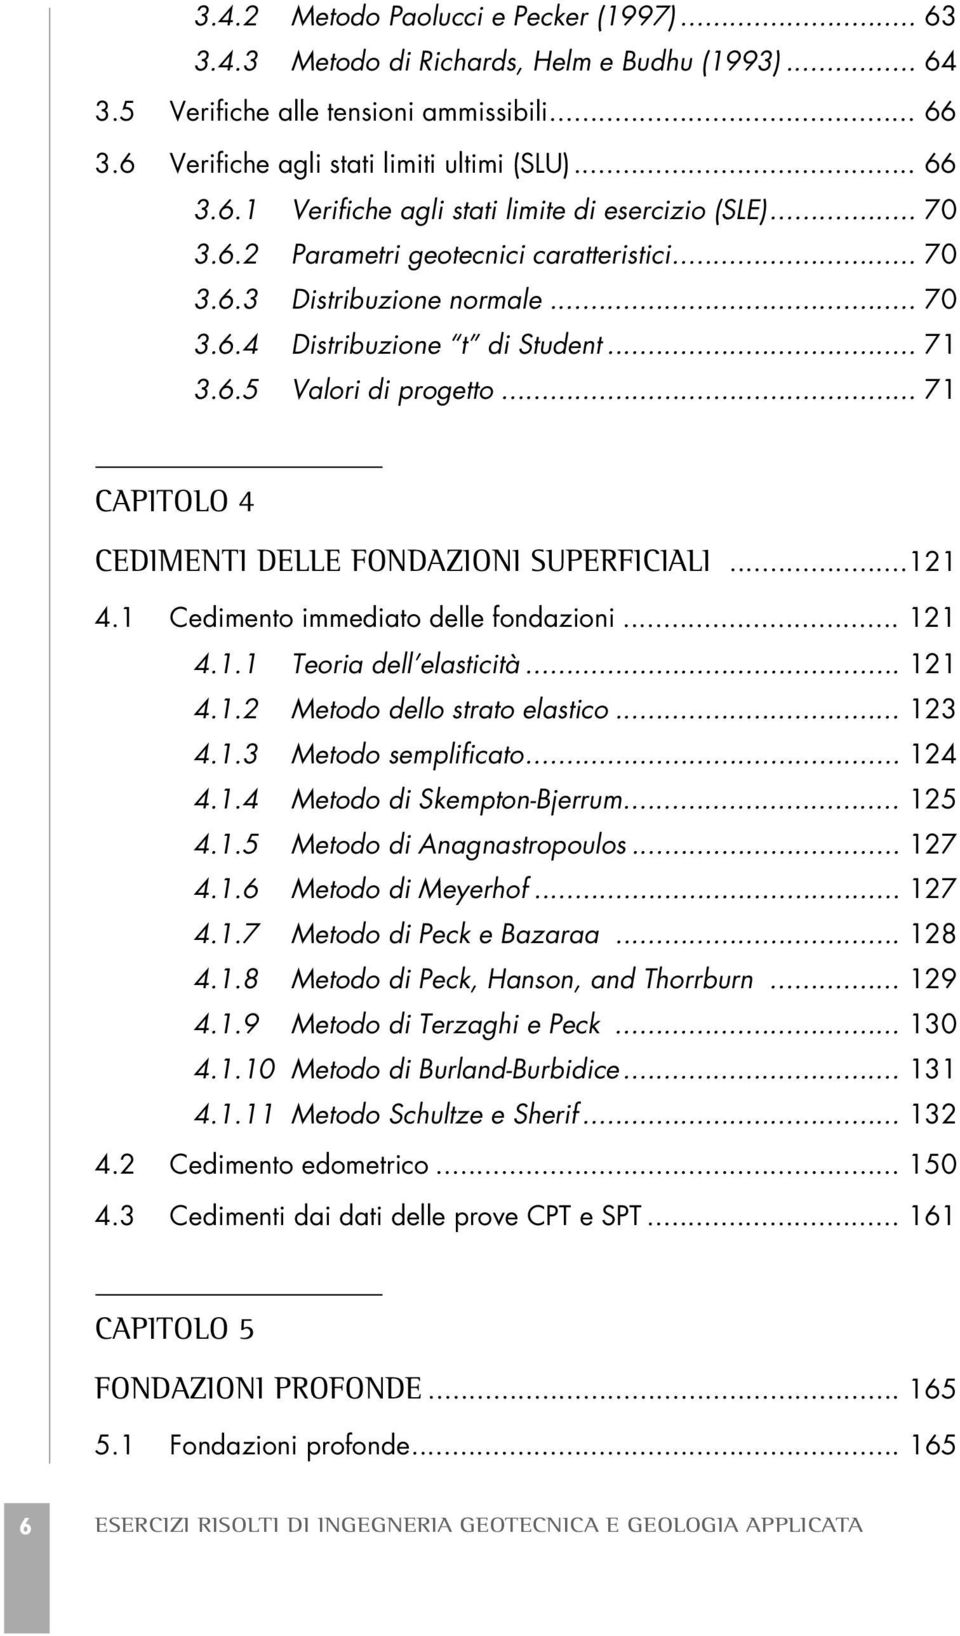 .. 71 CAPITOLO 4 CEDIMENTI DELLE FONDAZIONI SUPERFICIALI...121 4.1 Cedimento immediato delle fondazioni... 121 4.1.1 Teoria dell elasticità... 121 4.1.2 Metodo dello strato elastico... 123 4.1.3 Metodo semplificato.